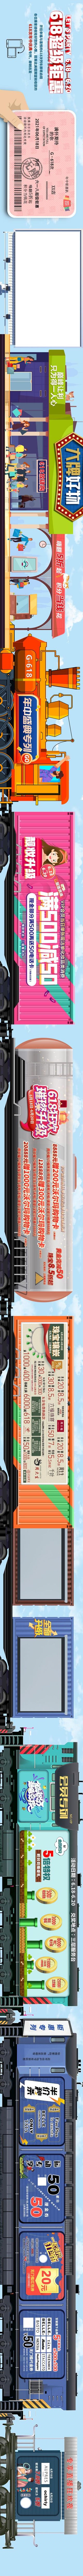 南门网 长图 主画面 活动 节日 商业 618 火车票 火车 优惠 活动 